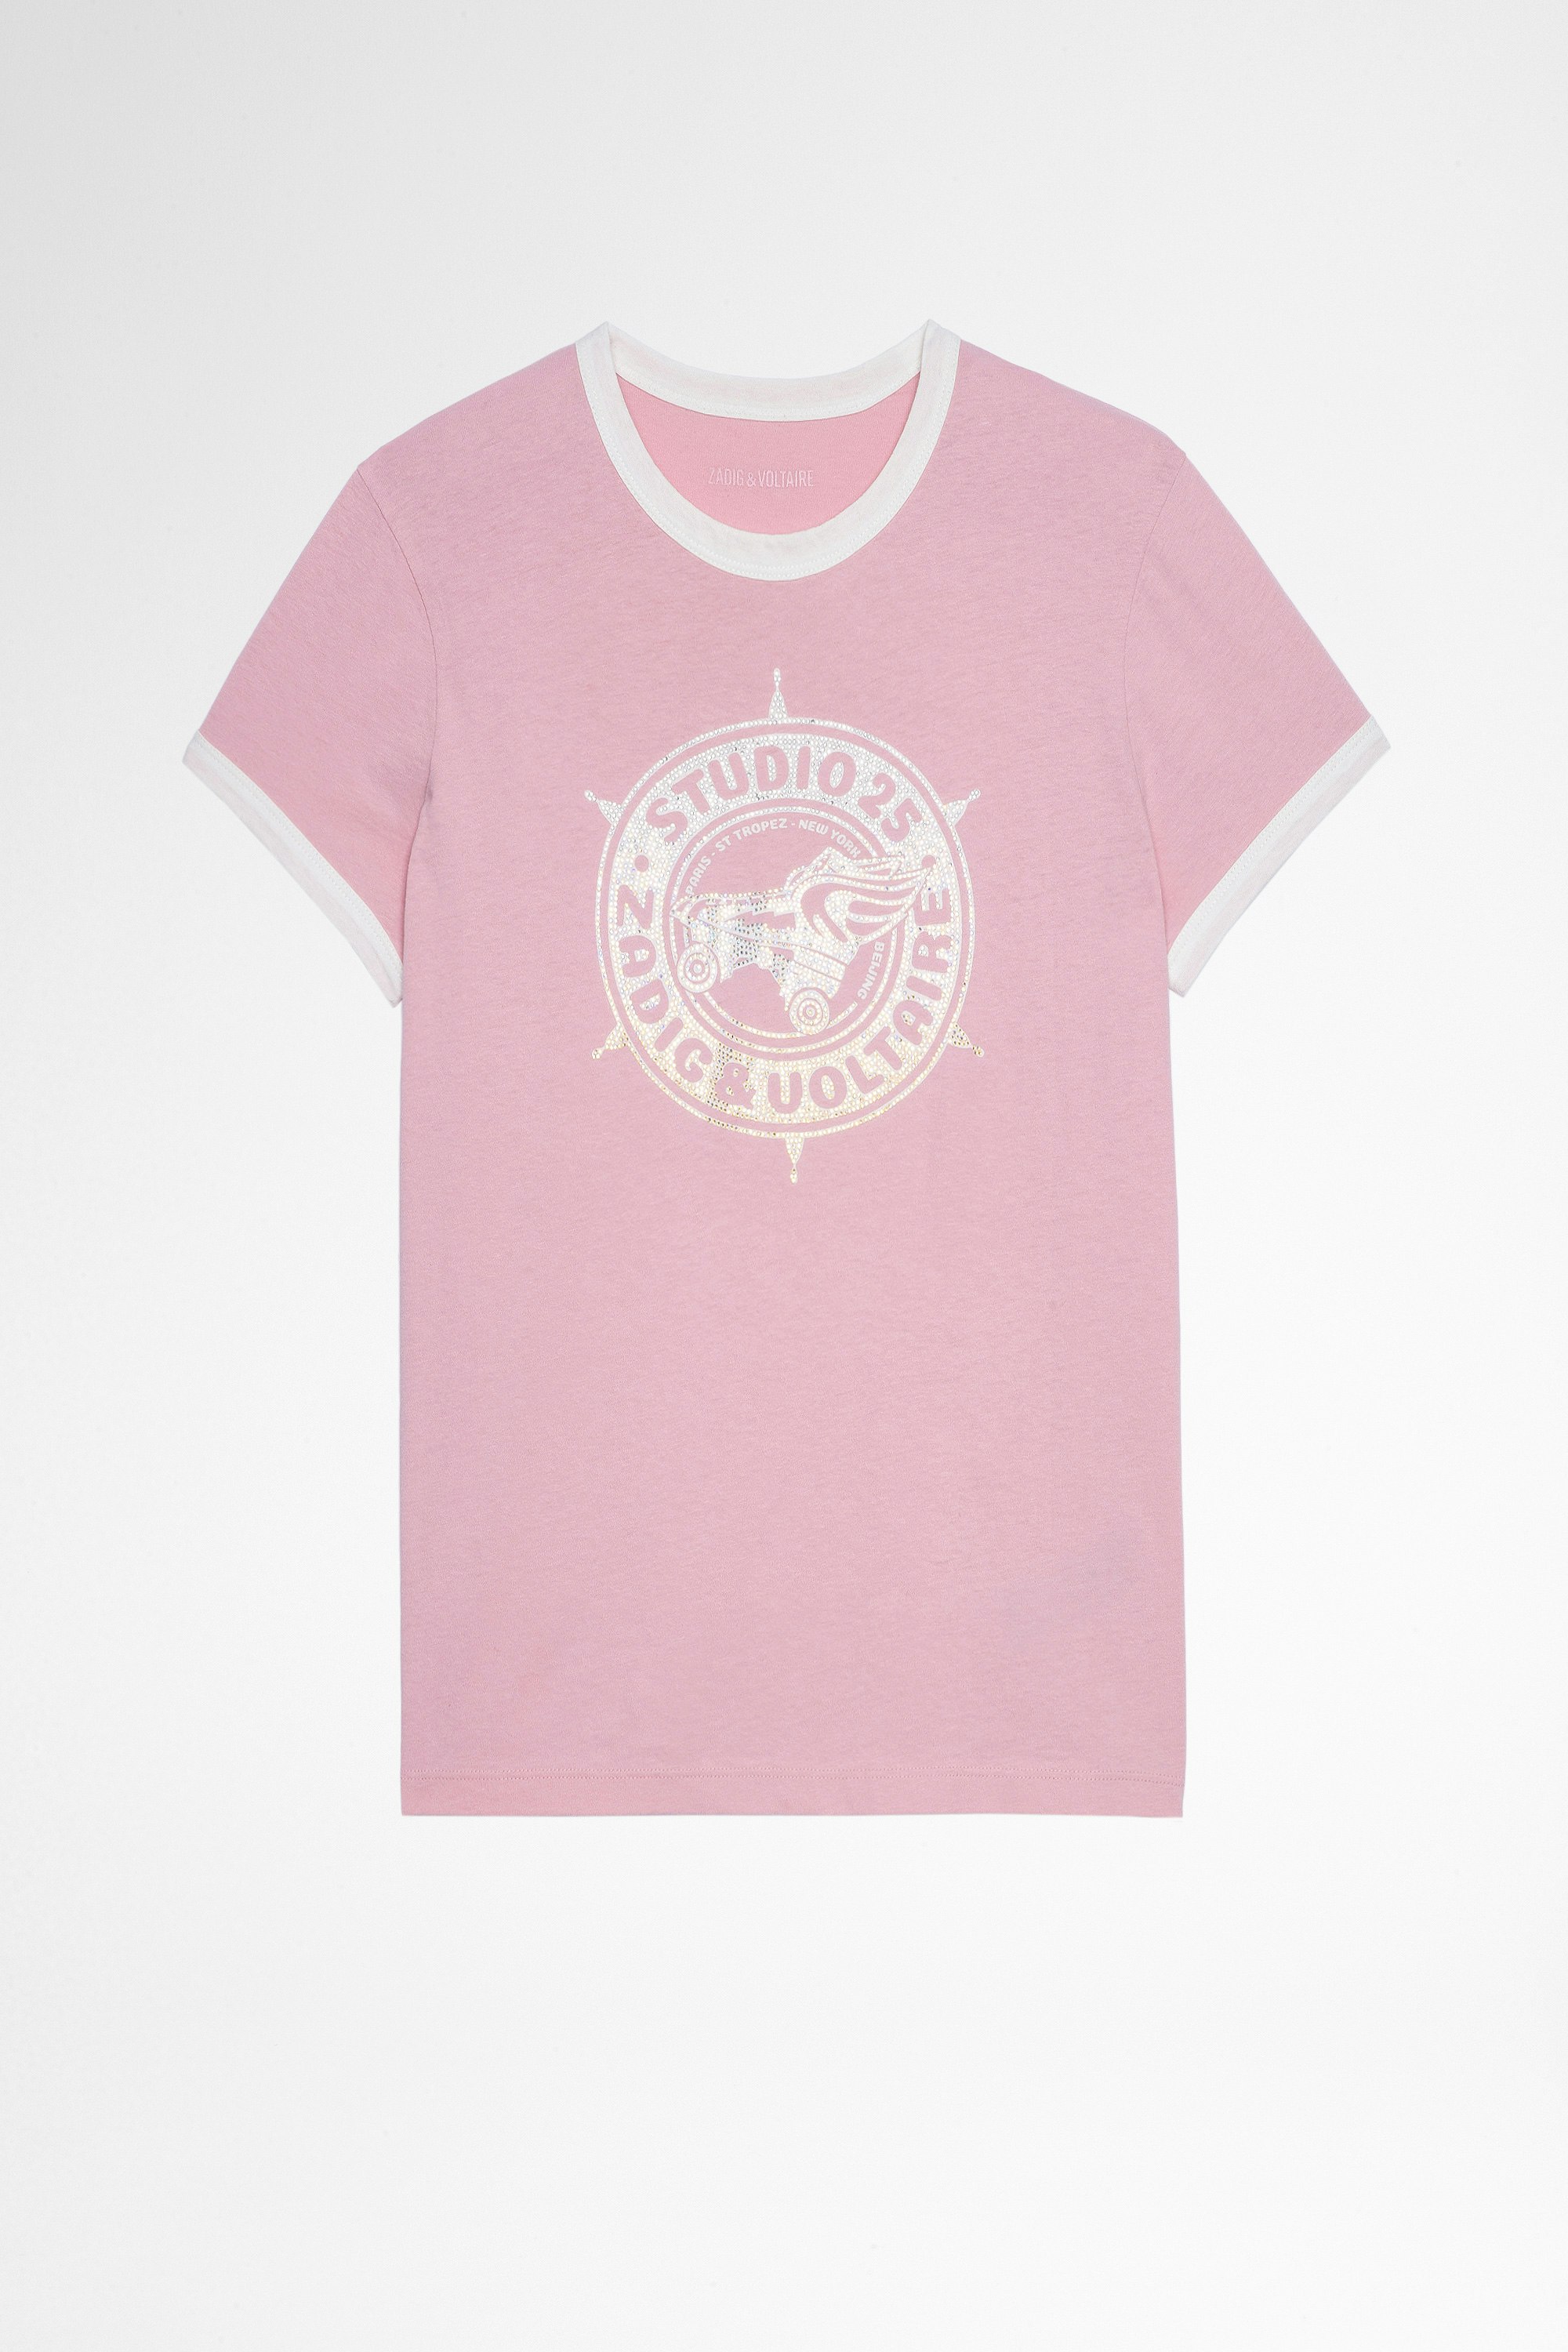 T-Shirt Zoe Studio 25 Strass T-shirt en coton rose imprimé studio 25 recouvert de cristaux Femme